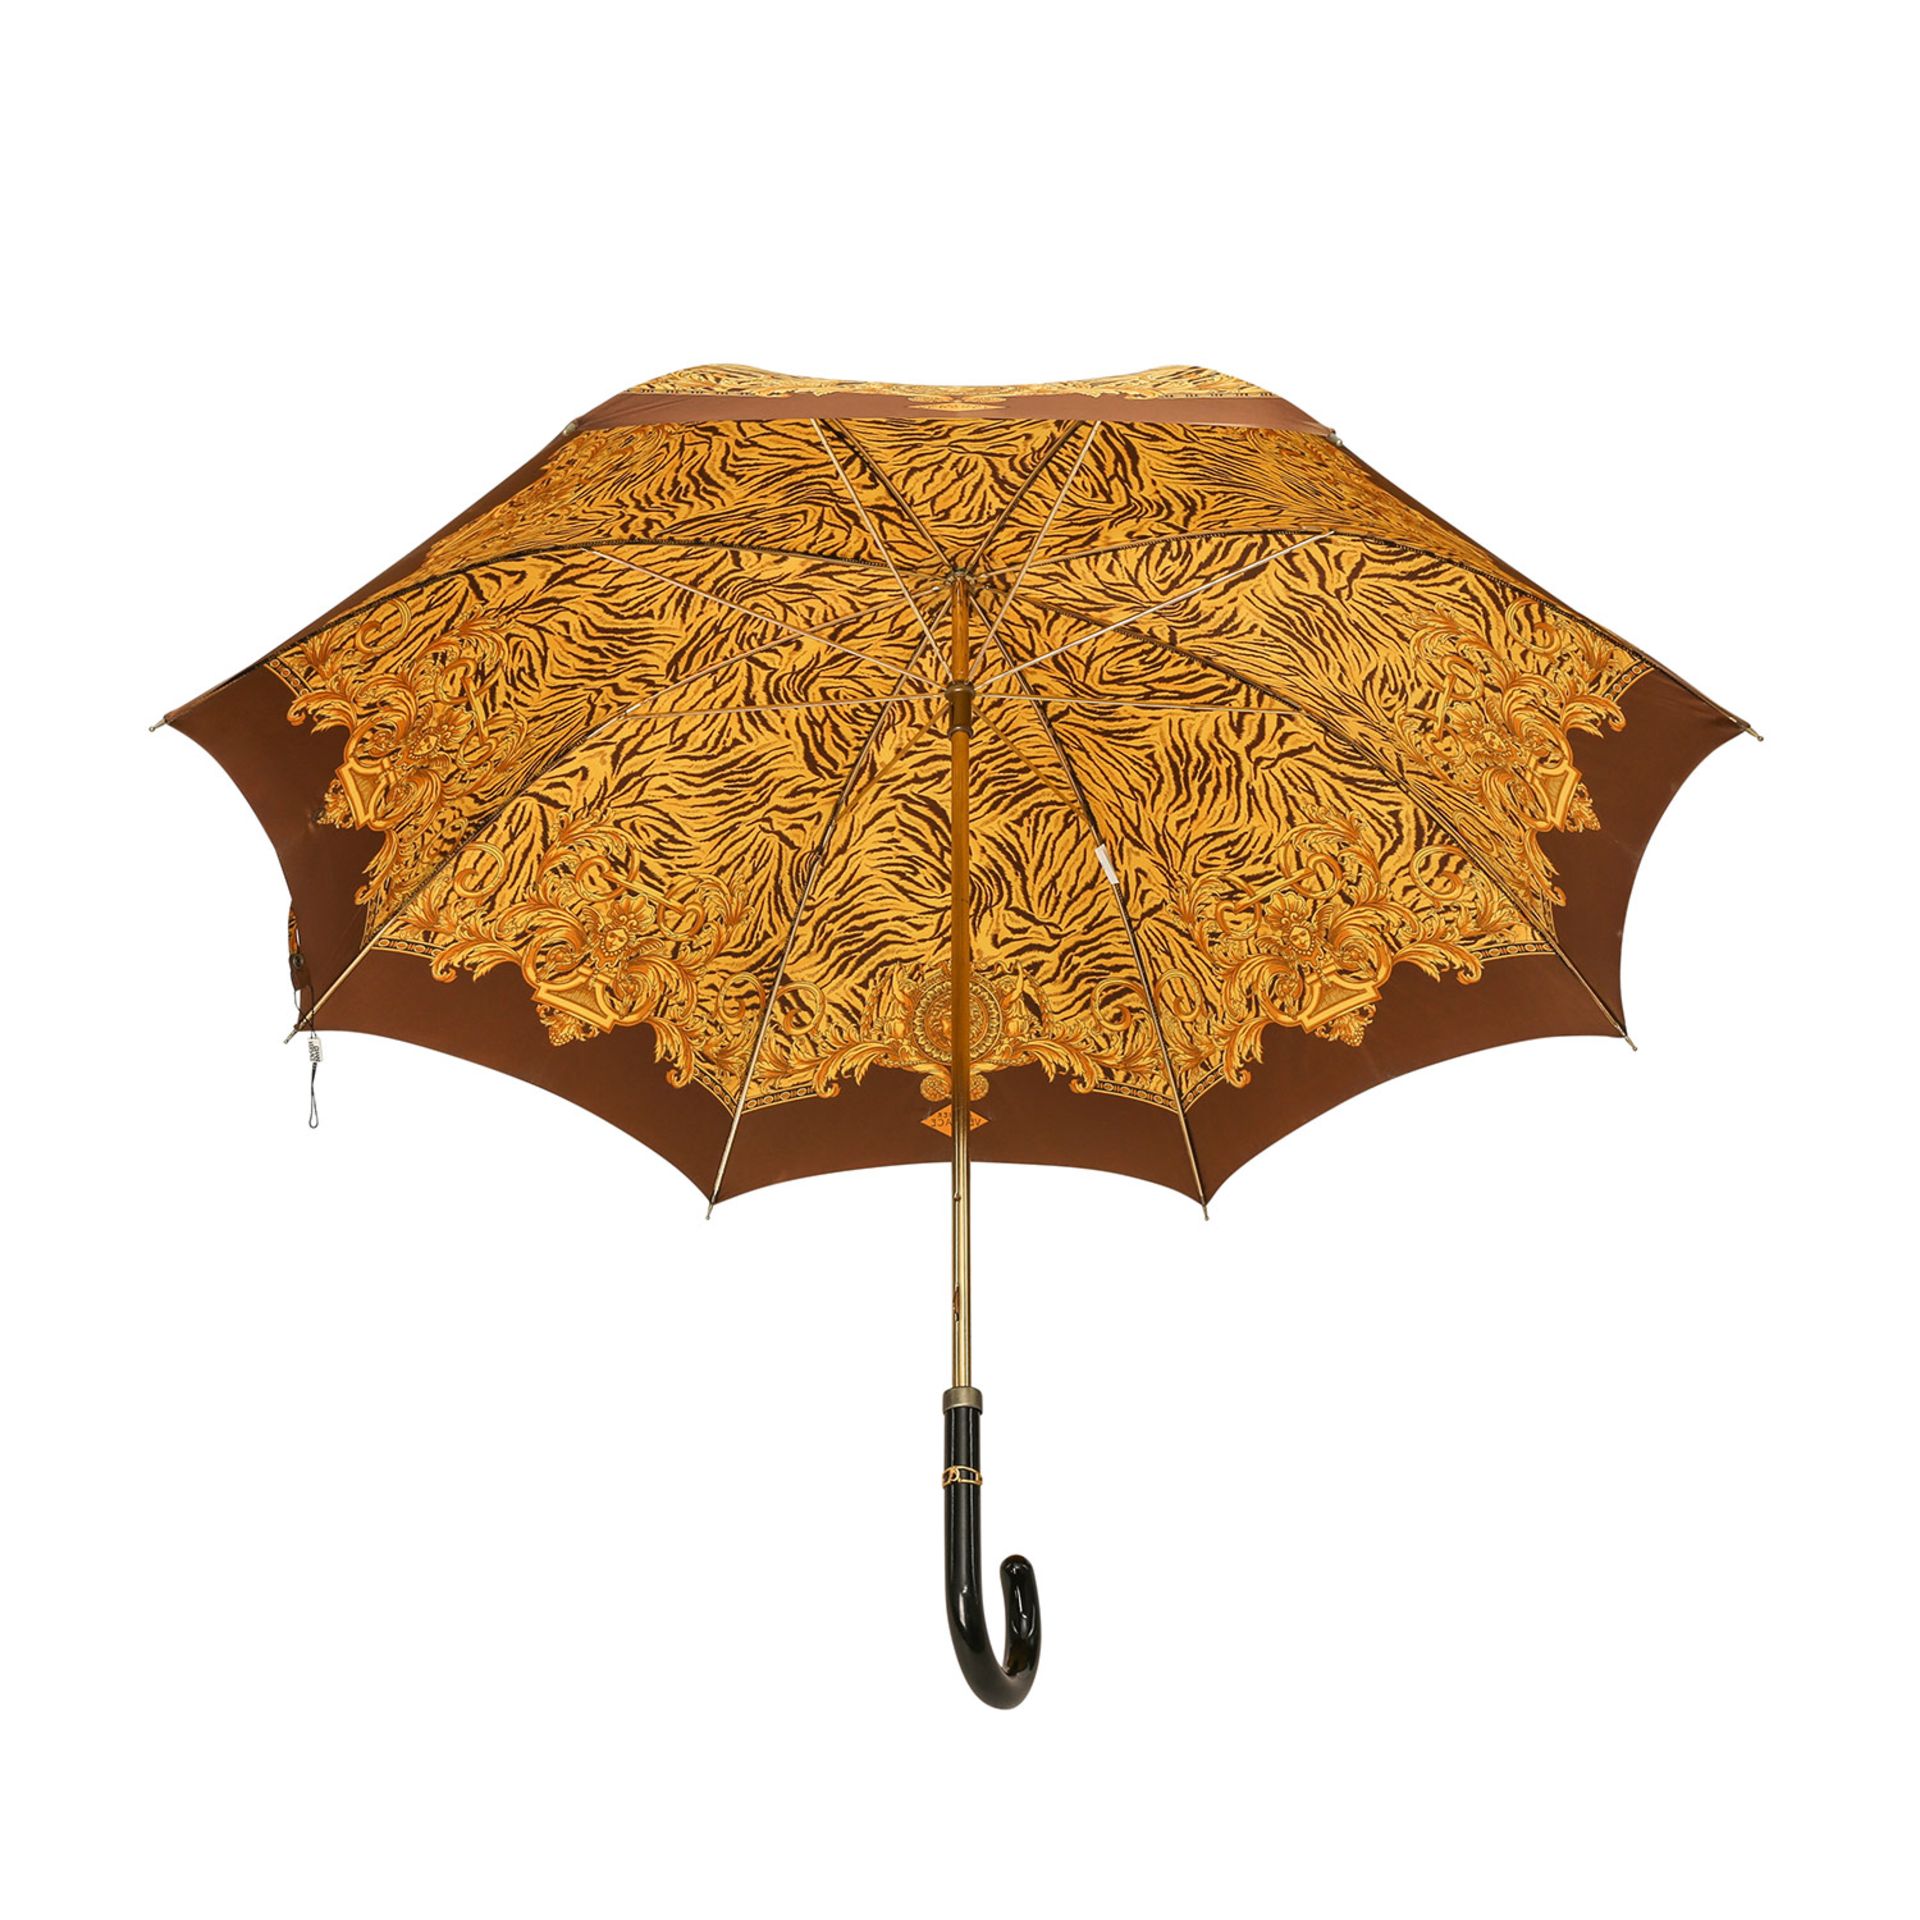 GIANNI VERSACE Regenschirm.Gold- und braunfarbener Tiger-Print mit goldfarbenen Barocken- - Bild 4 aus 5